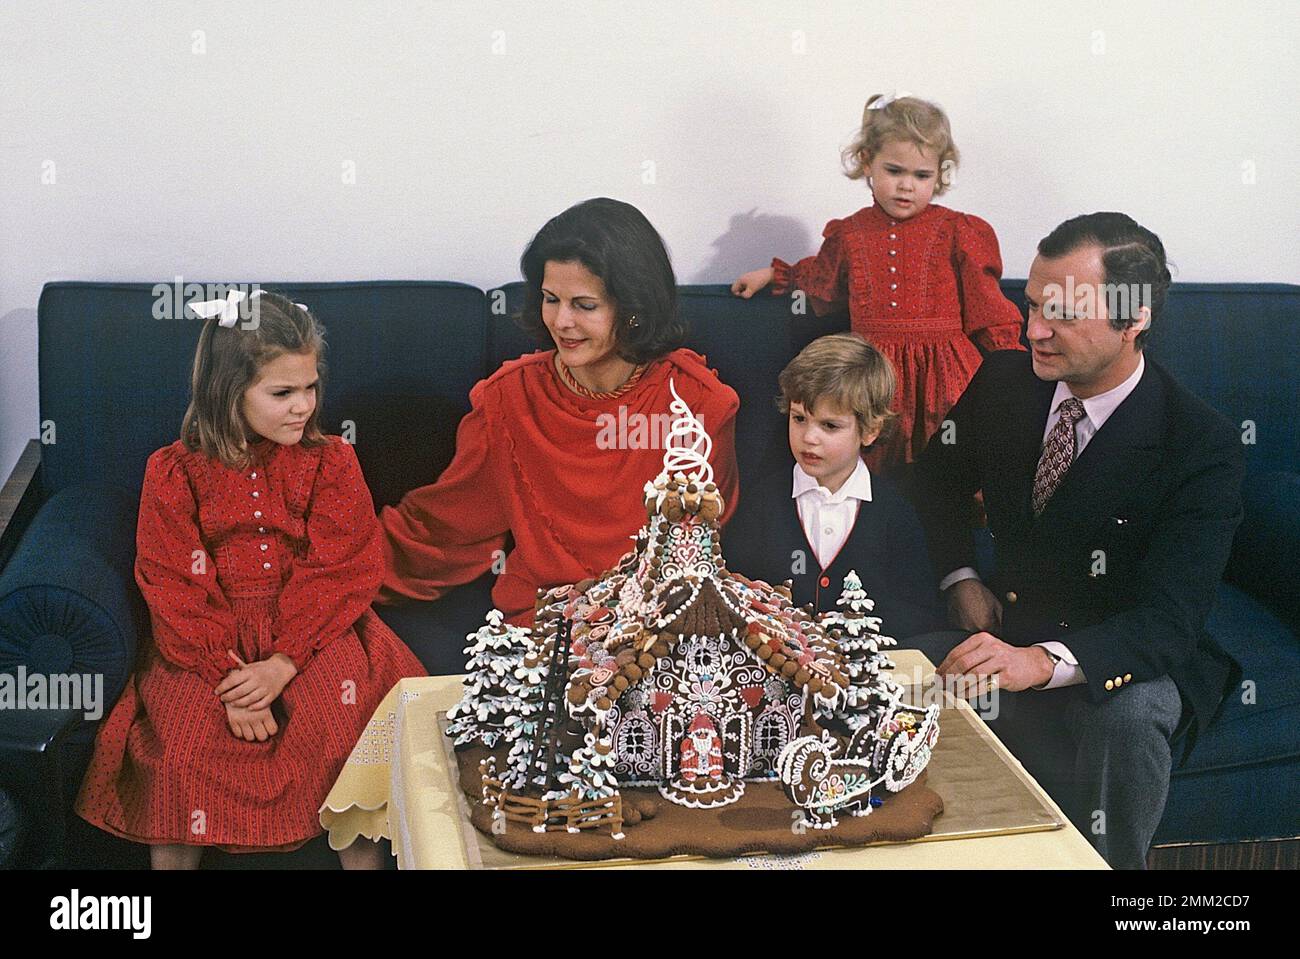 Carl XVI Gustaf, re di Svezia. Nato il 30 aprile 1946. Il re Carl XVI Gustaf, la regina Silvia i loro figli, la principessa Madeleine, la principessa corona Victoria, il principe Carl Philip, durante la sessione fotografica annuale di natale, quest'anno 1984 con una casa di pan di zenzero come decorazione. Foto Stock